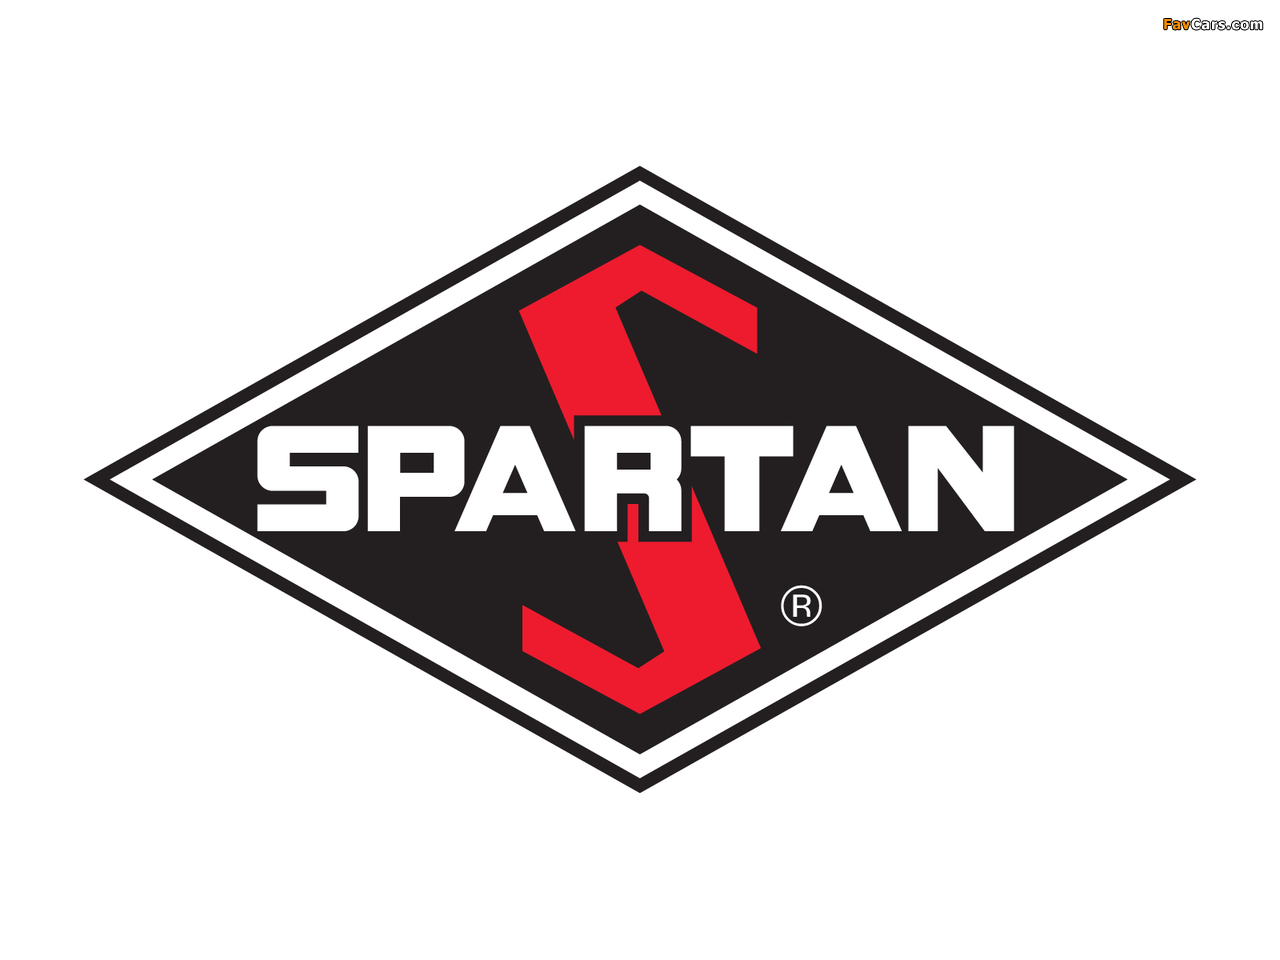 Spartan images (1280 x 960)